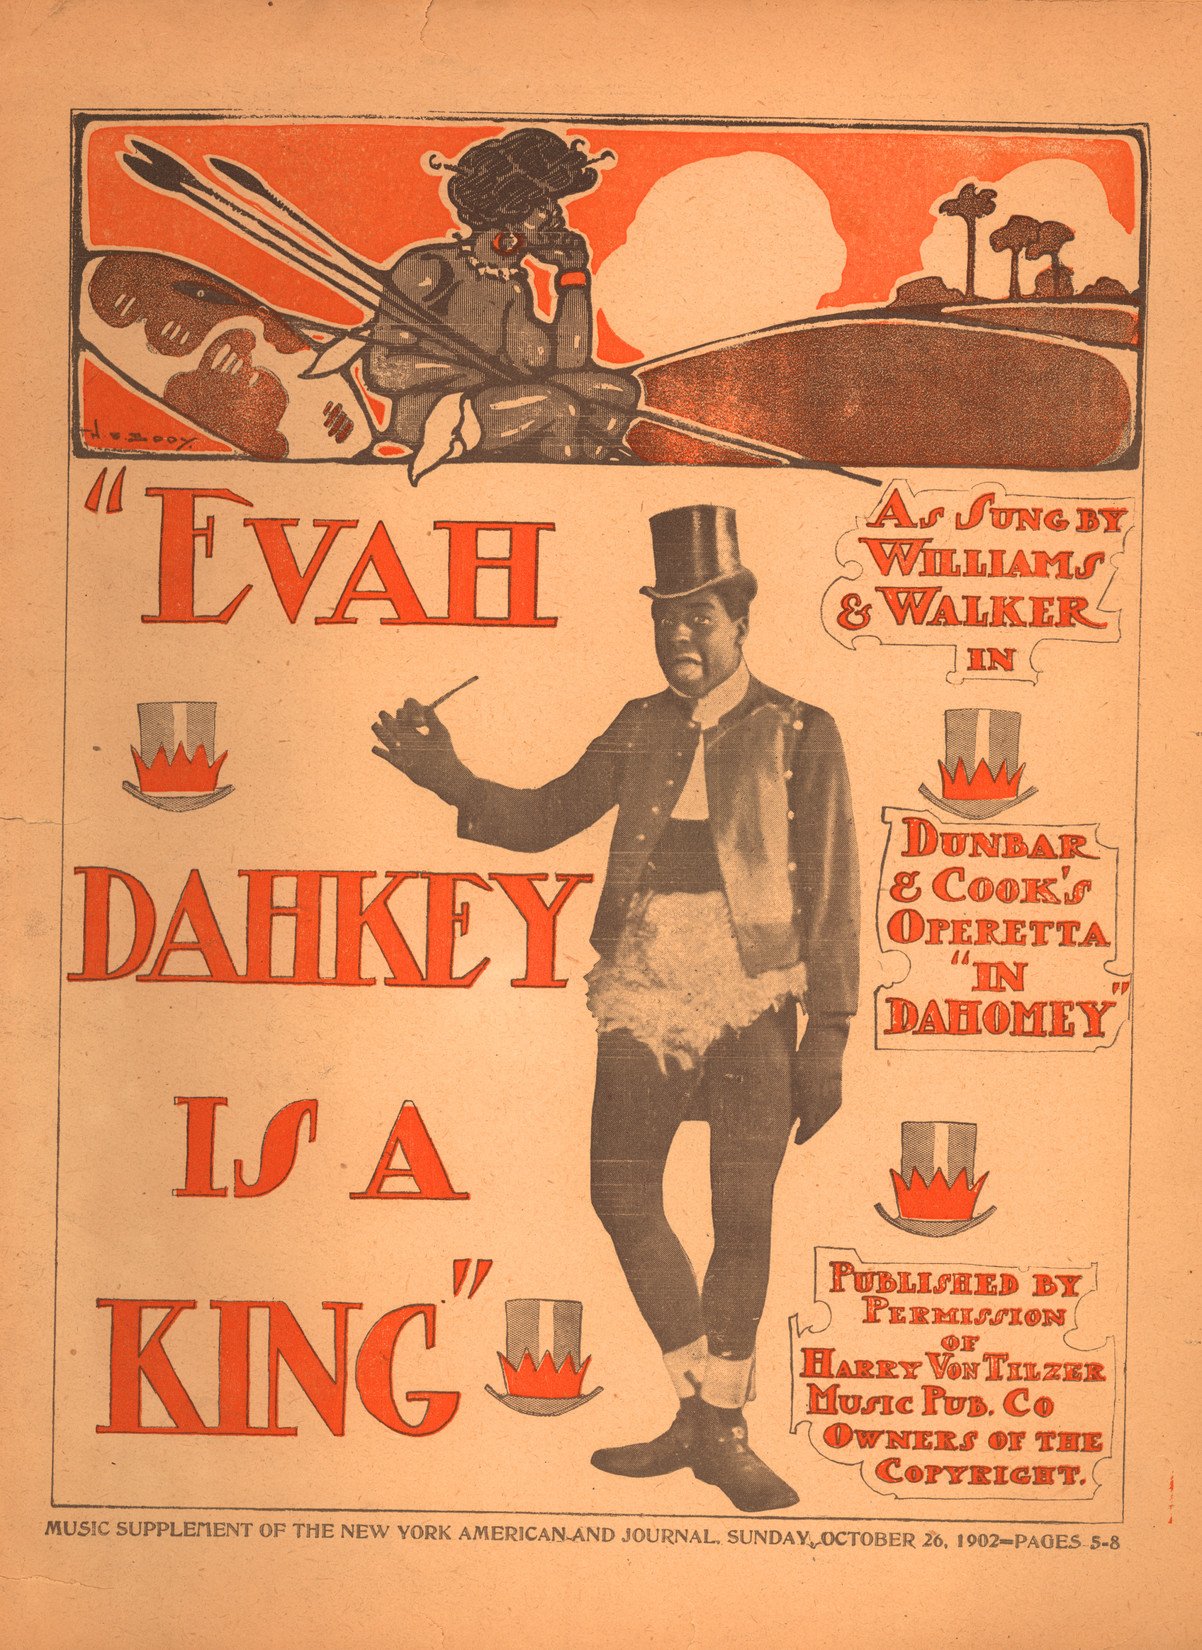 1902-evah-dahkey-is-a-king-williams-walker-in-dahomey.jpg